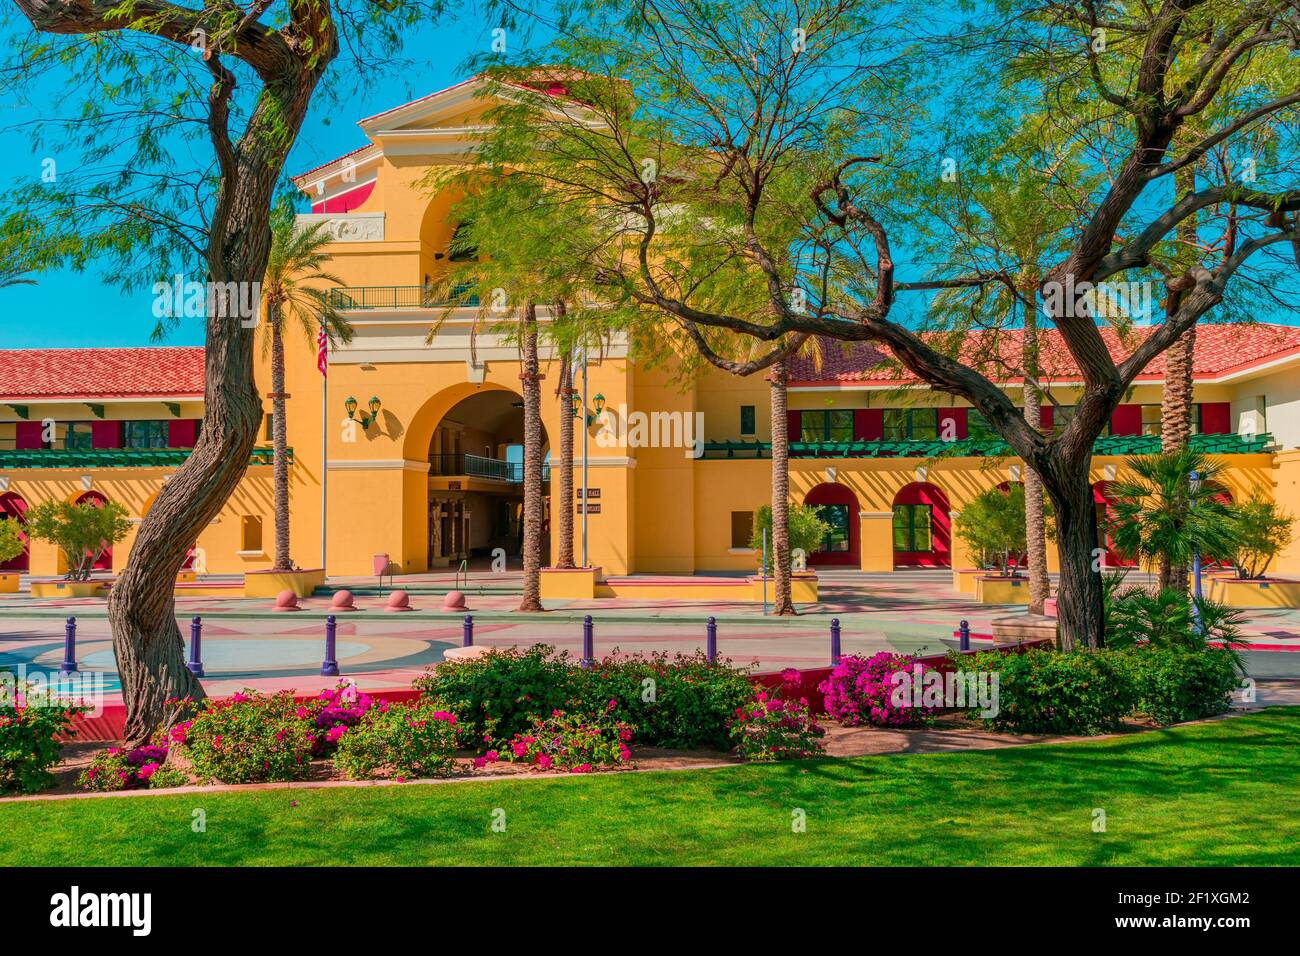 Das Regierungsgebäude der Cathedral City und Palm Springs Gegend ist brillant in Farbe und Landschaft. Auf der anderen Straßenseite befindet sich ein erfrischender Park Stockfoto